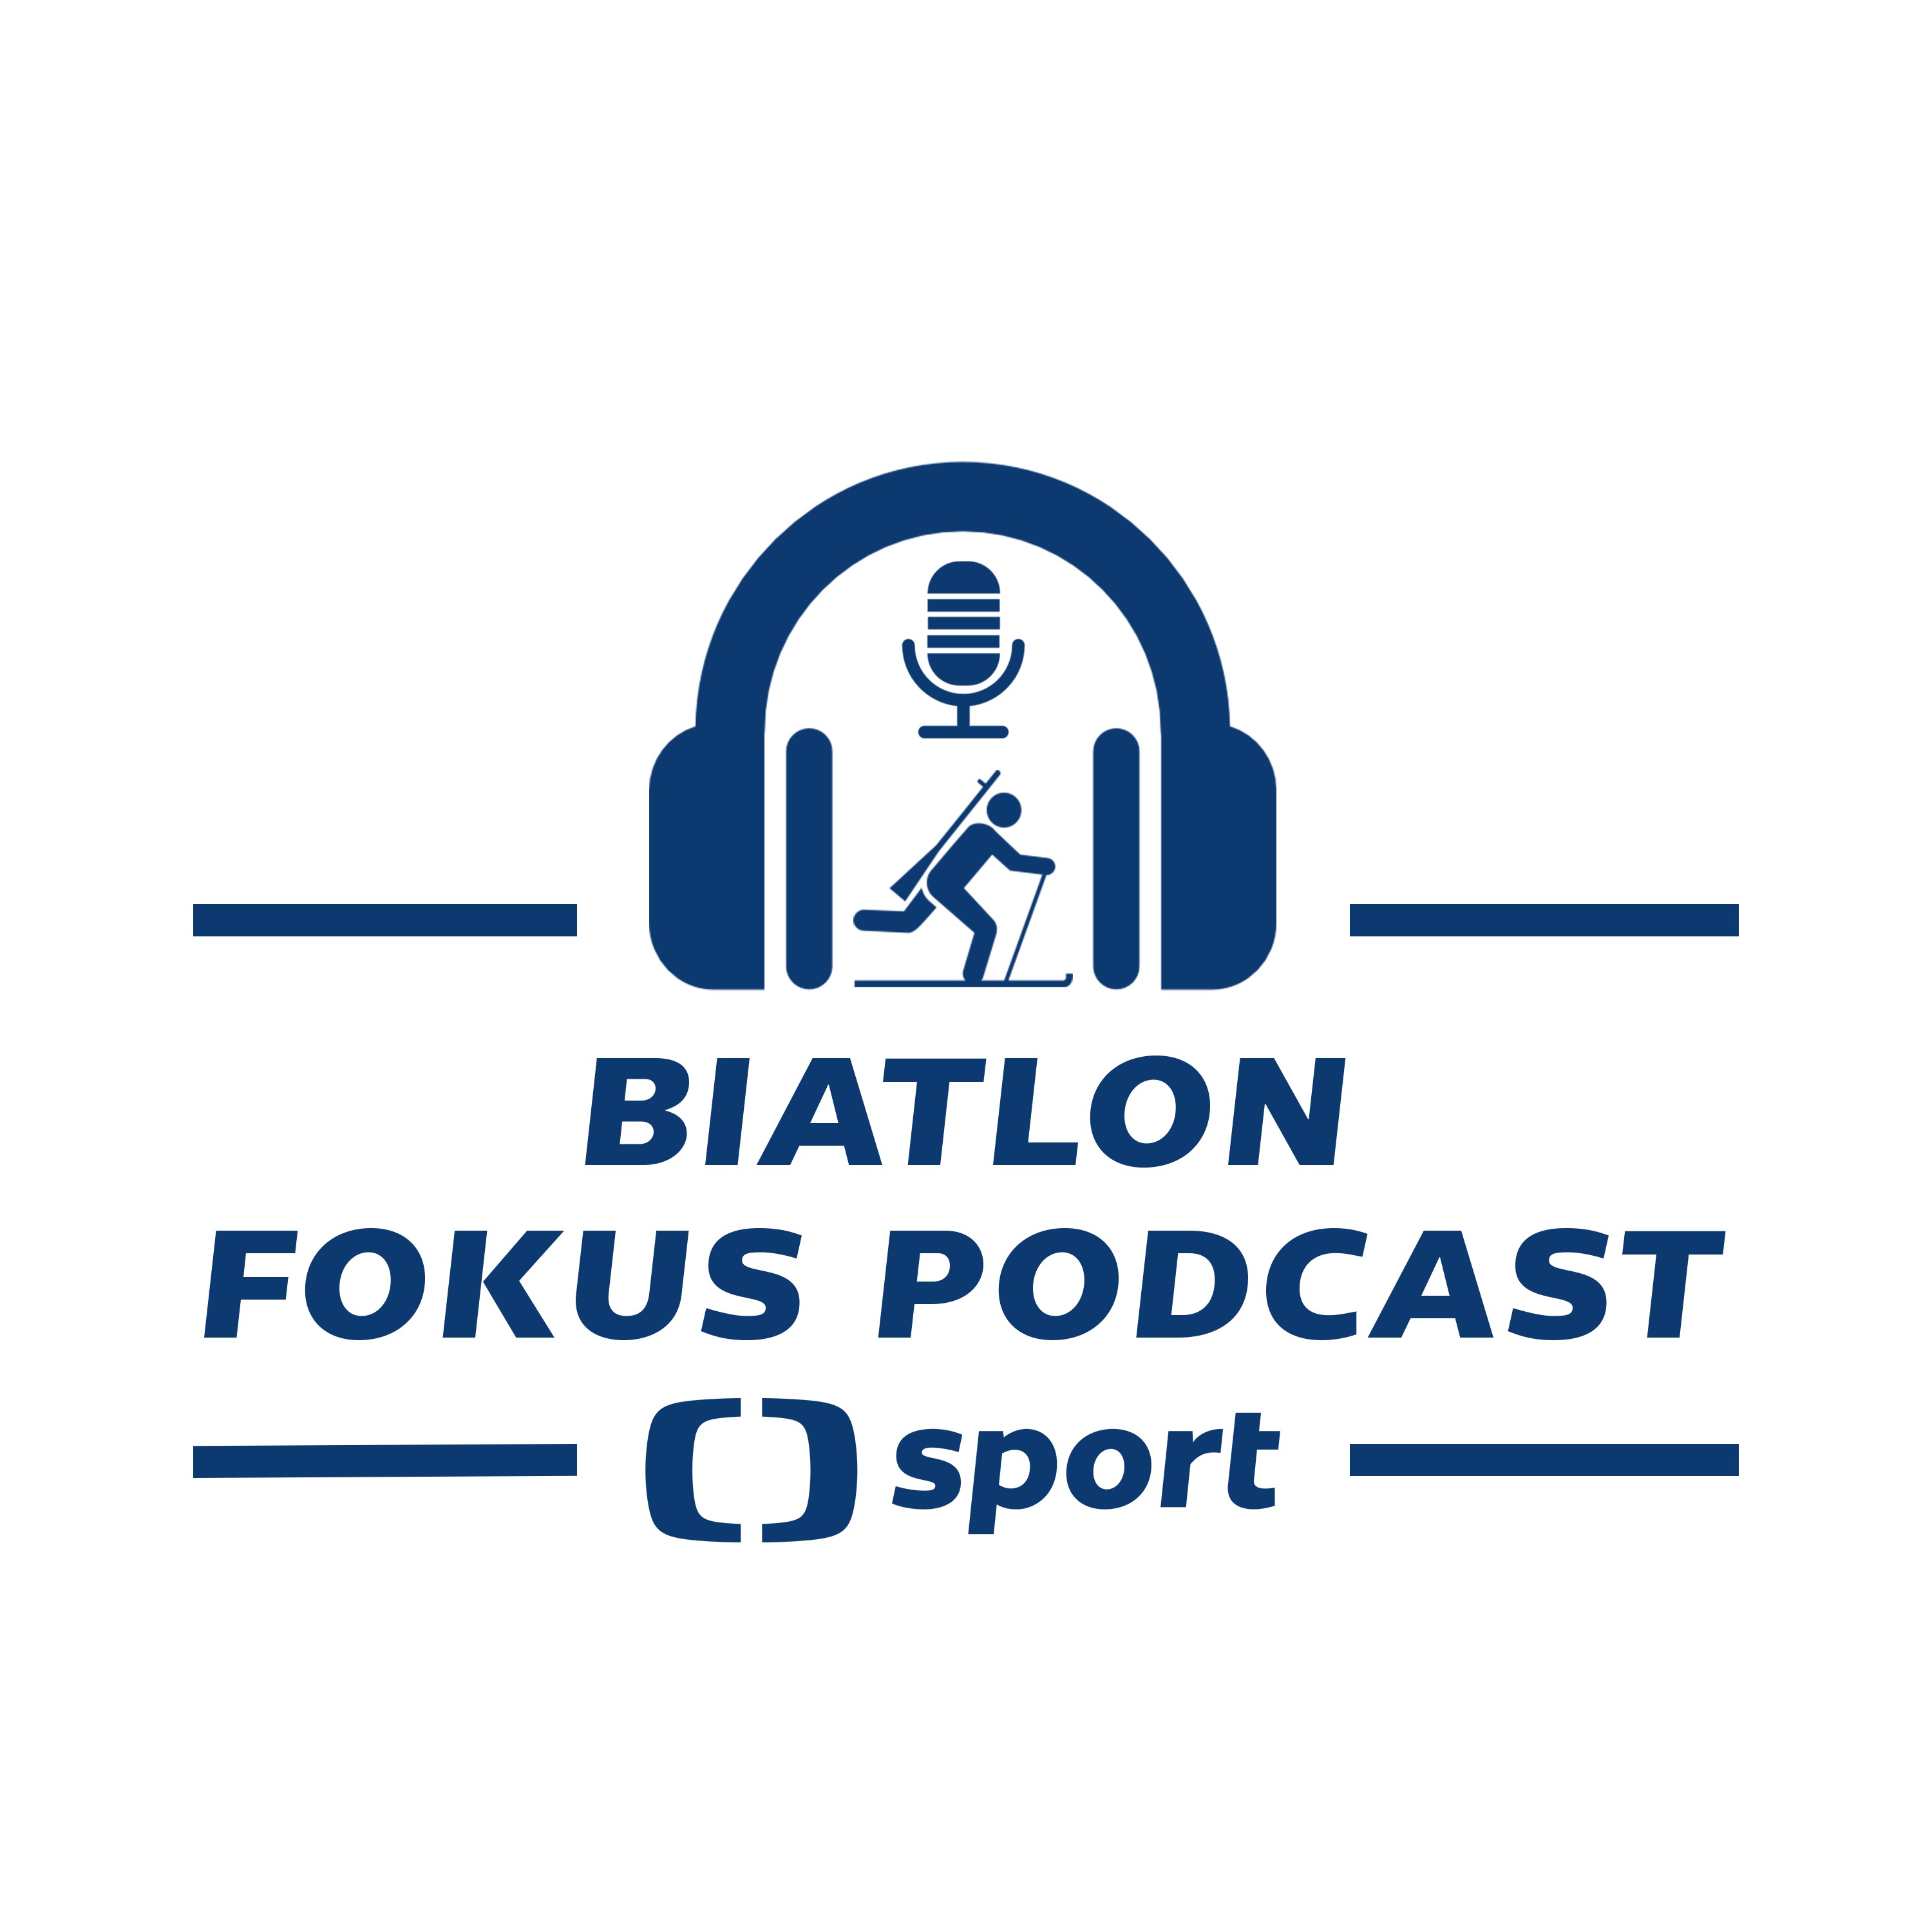 Biatlon fokus podcast: Co se změní po olympijské sezoně a proč se těšit na další?